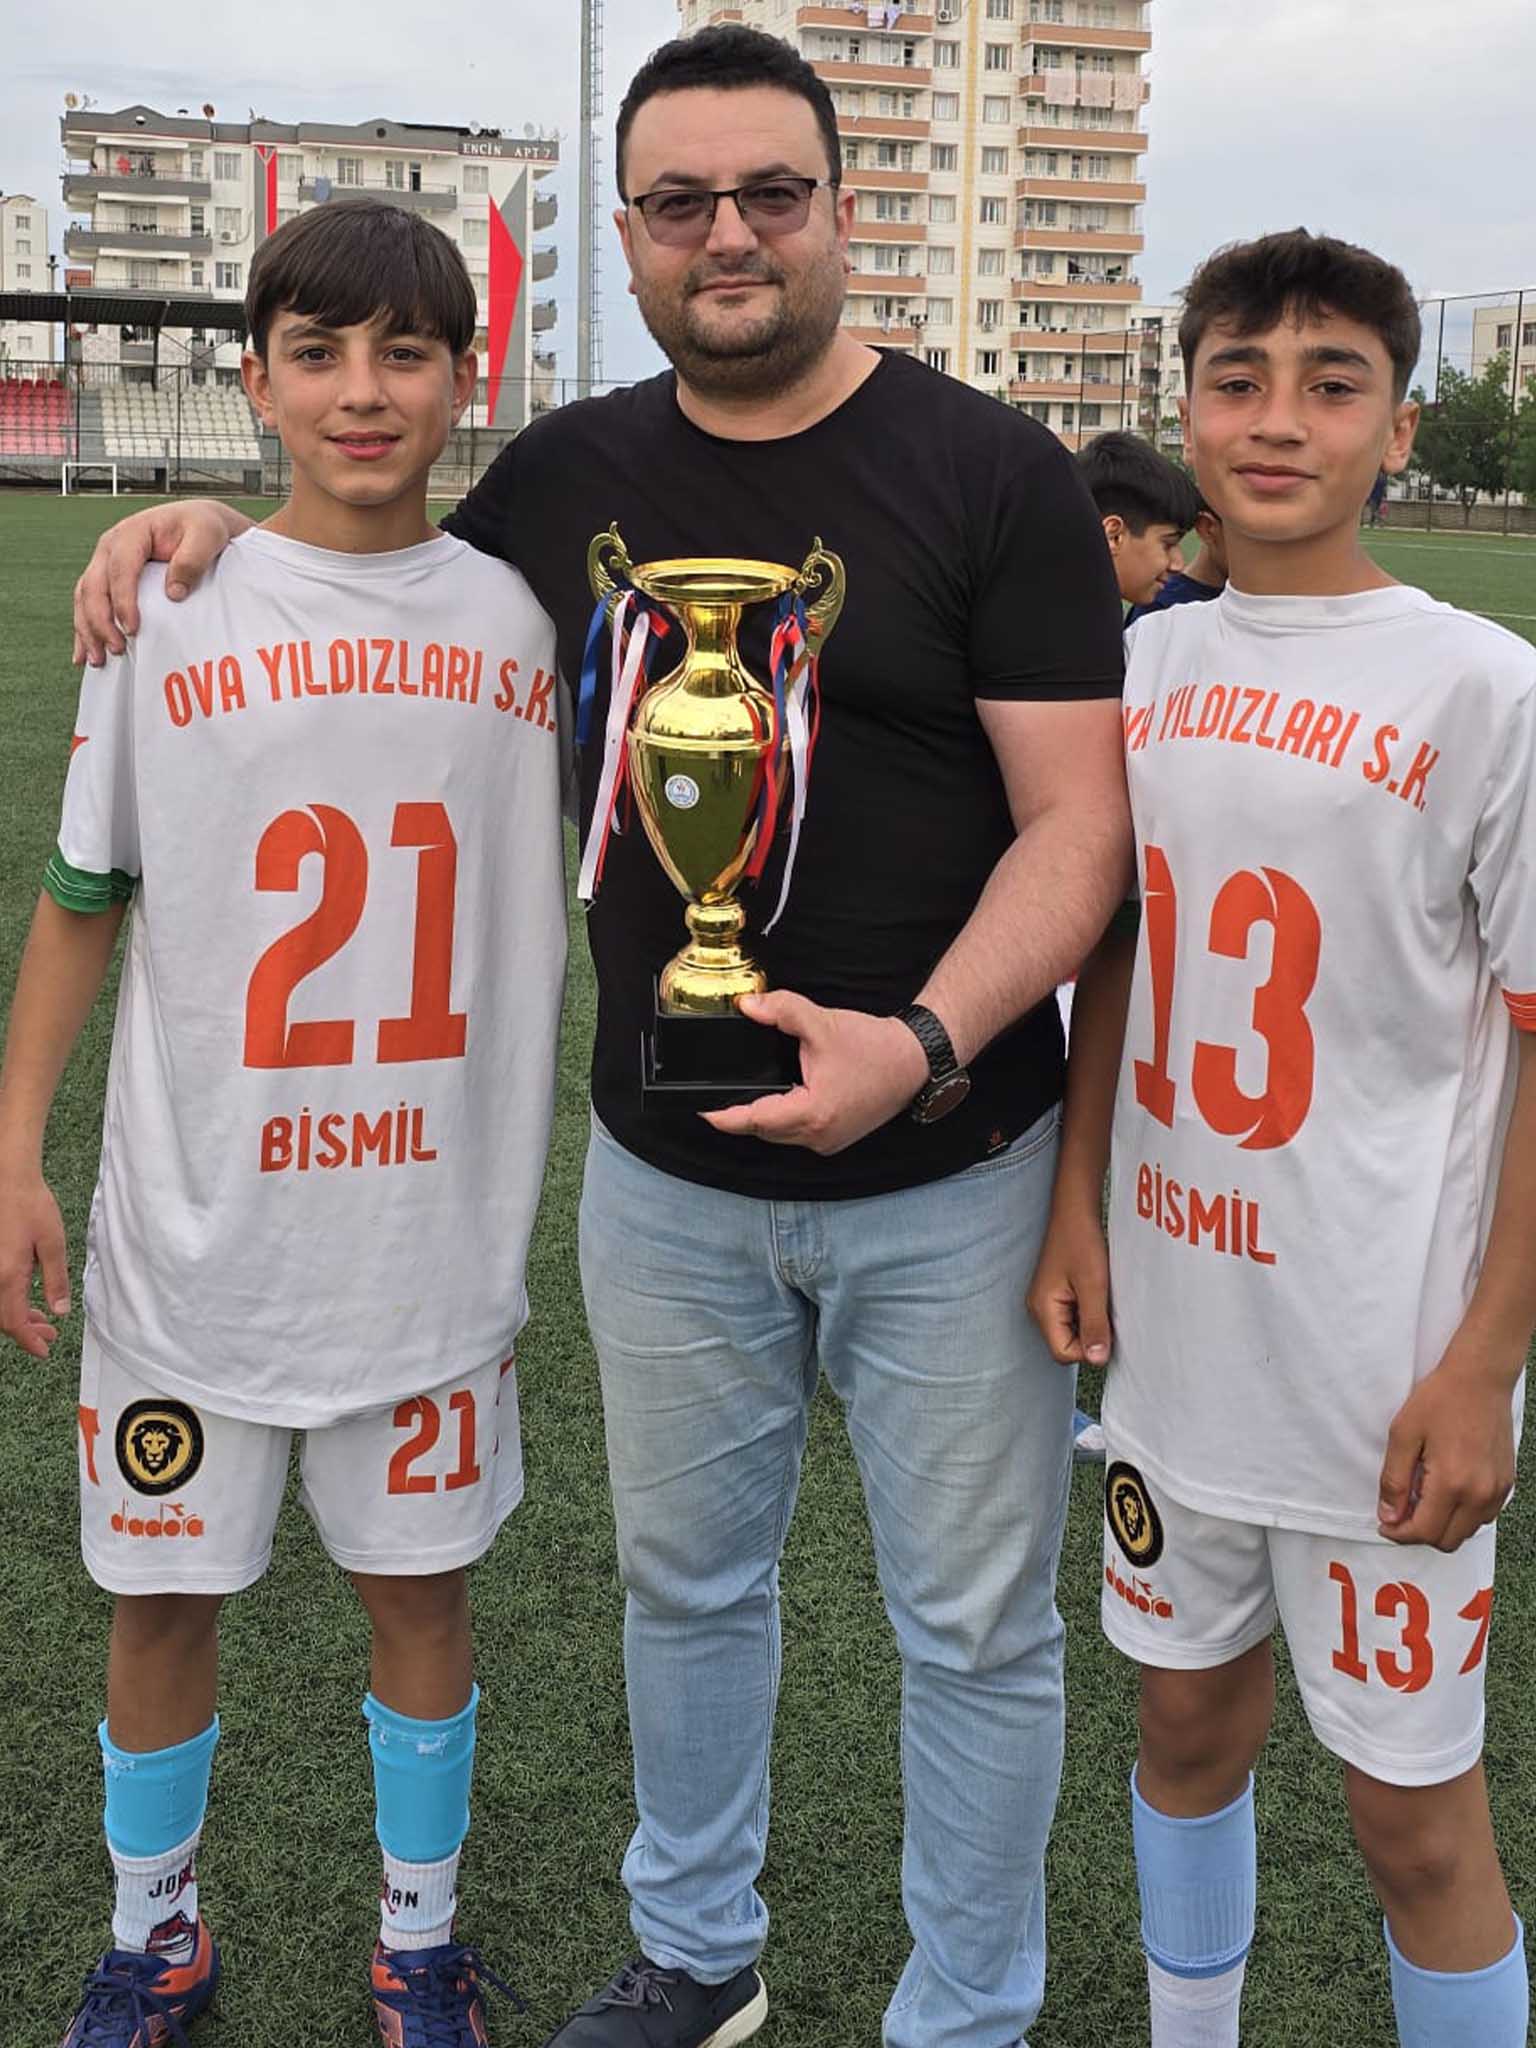 Bismil Ova Yıldızları Ve Dsi̇ Spor Türkiye Şampiyonasına Kaldı 3